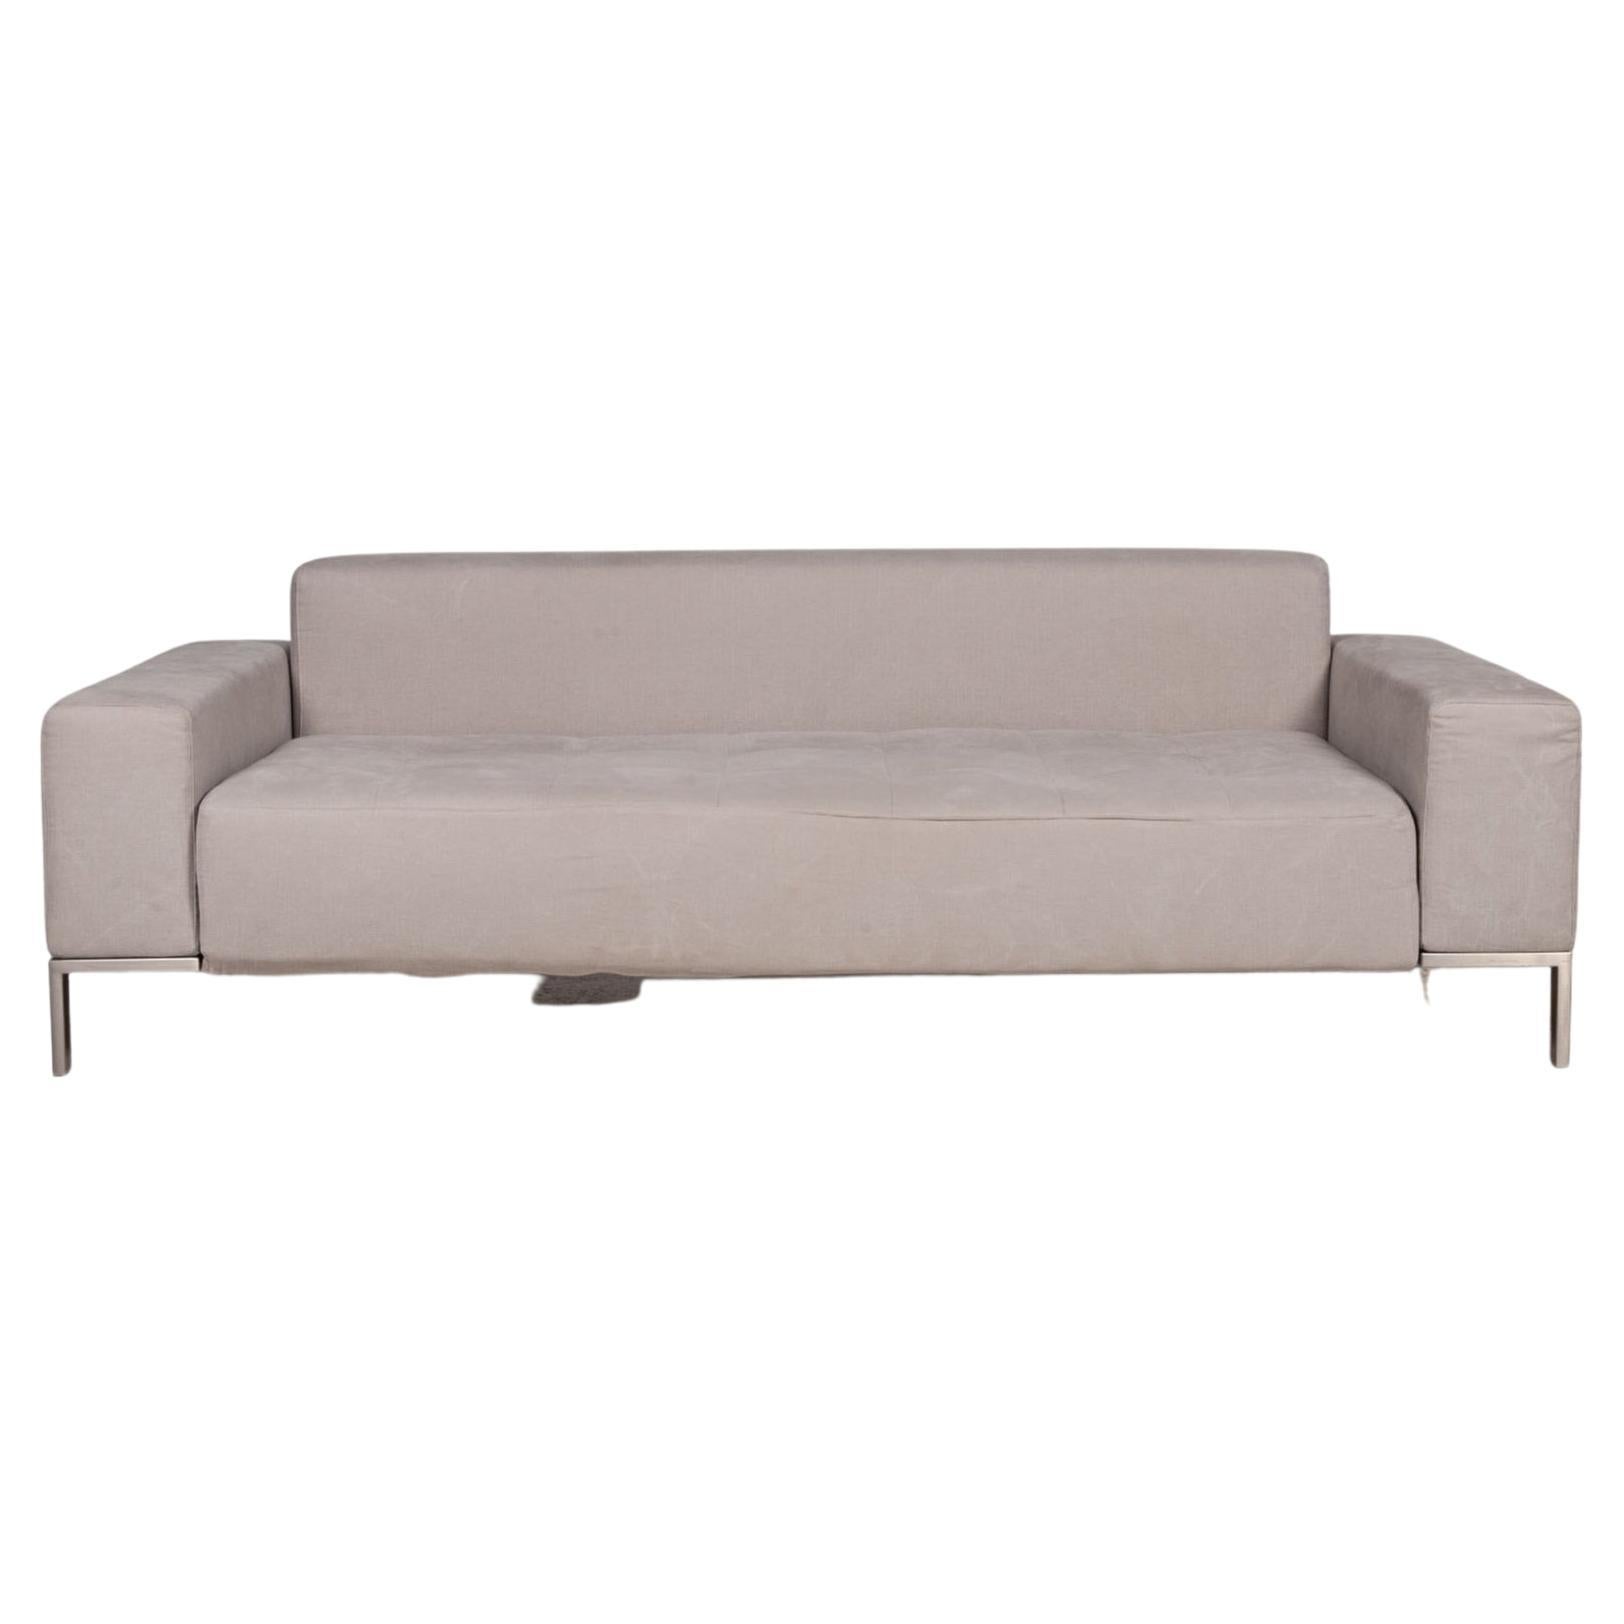 Zanotta Alfa Fabric Sofa Gray Two-Seater Couch For Sale